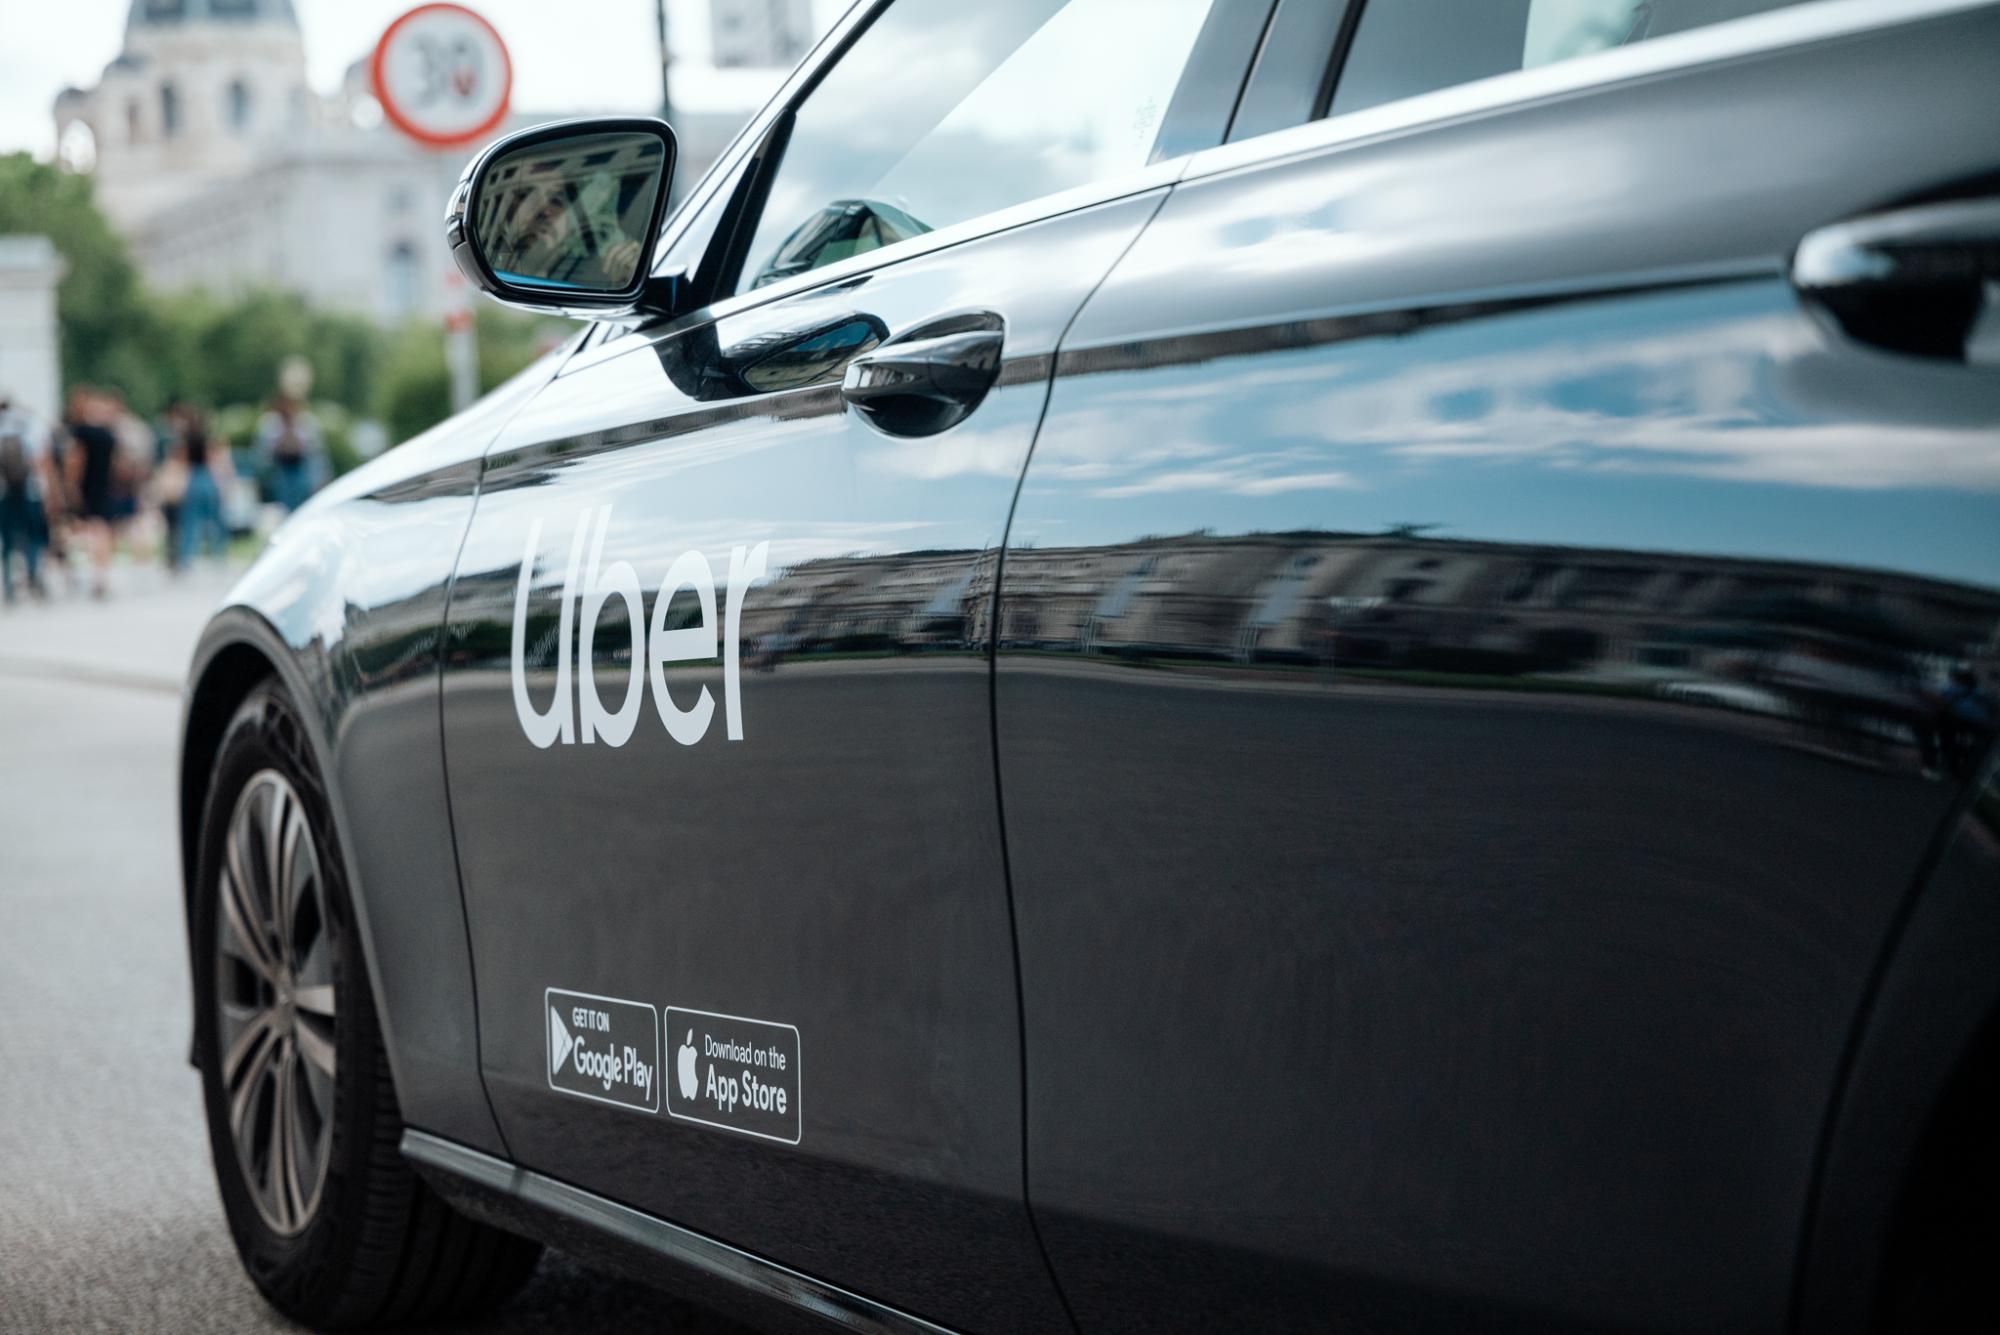 Österreichweit verfügbar: Warum Uber aufs Land abfährt